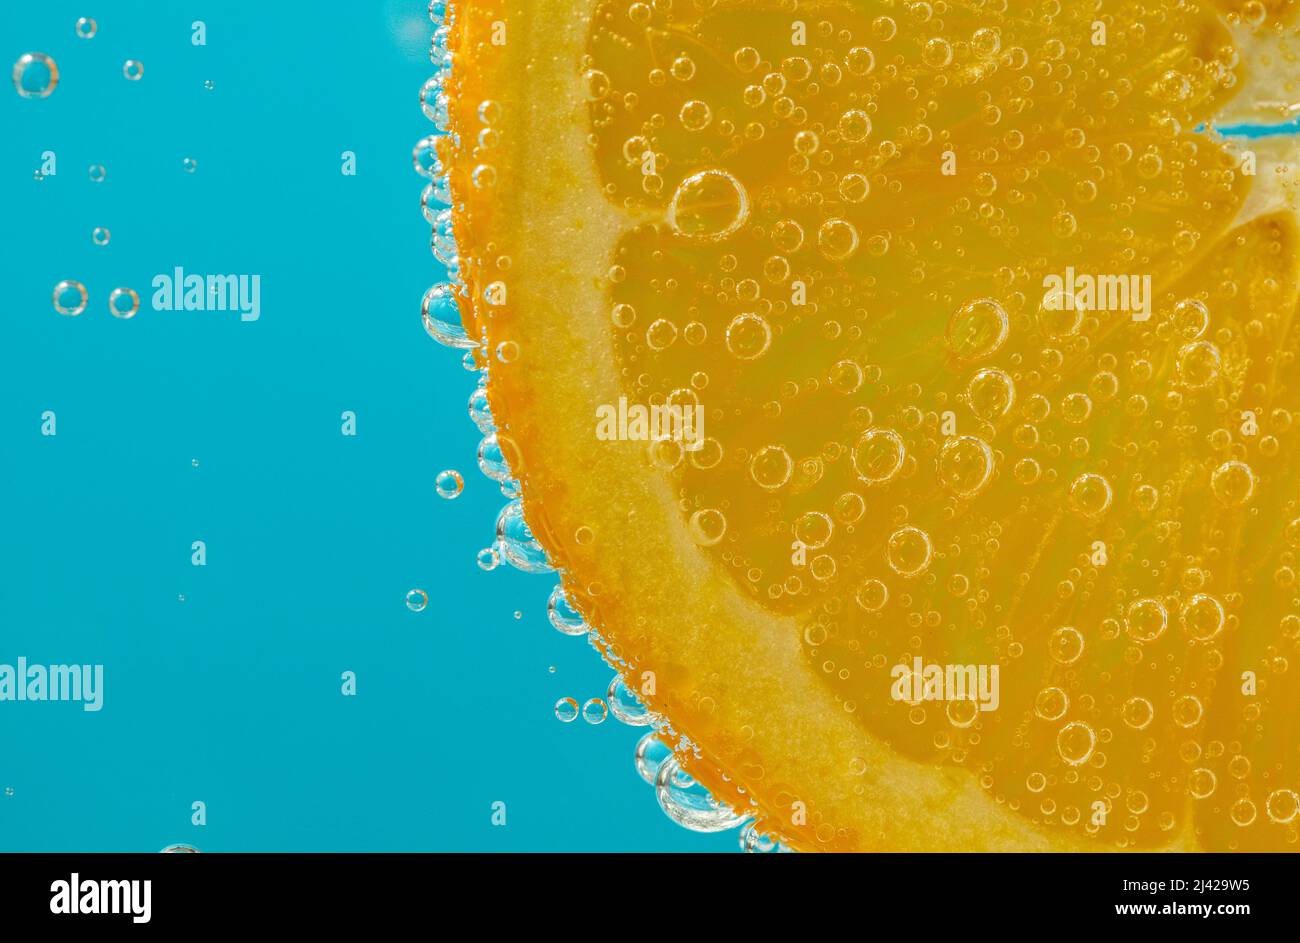 primo piano di una fetta arancione sospesa in liquido che mostra bolle su sfondo blu chiaro Foto Stock